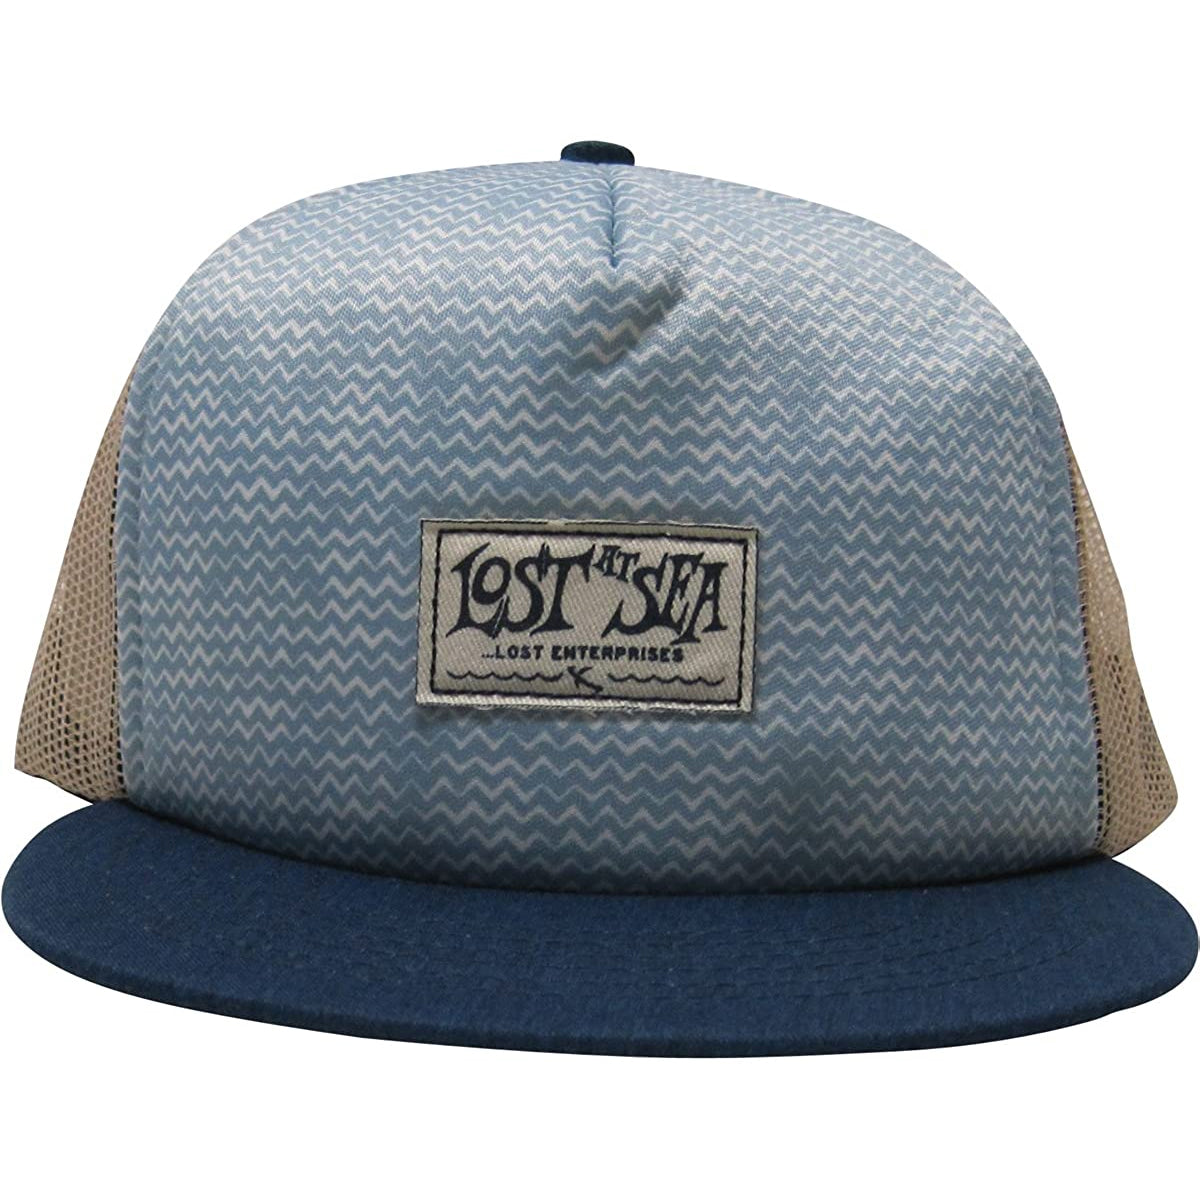 Lost Windchop Men's Trucker Adjustable Hats Brand New-LA133745